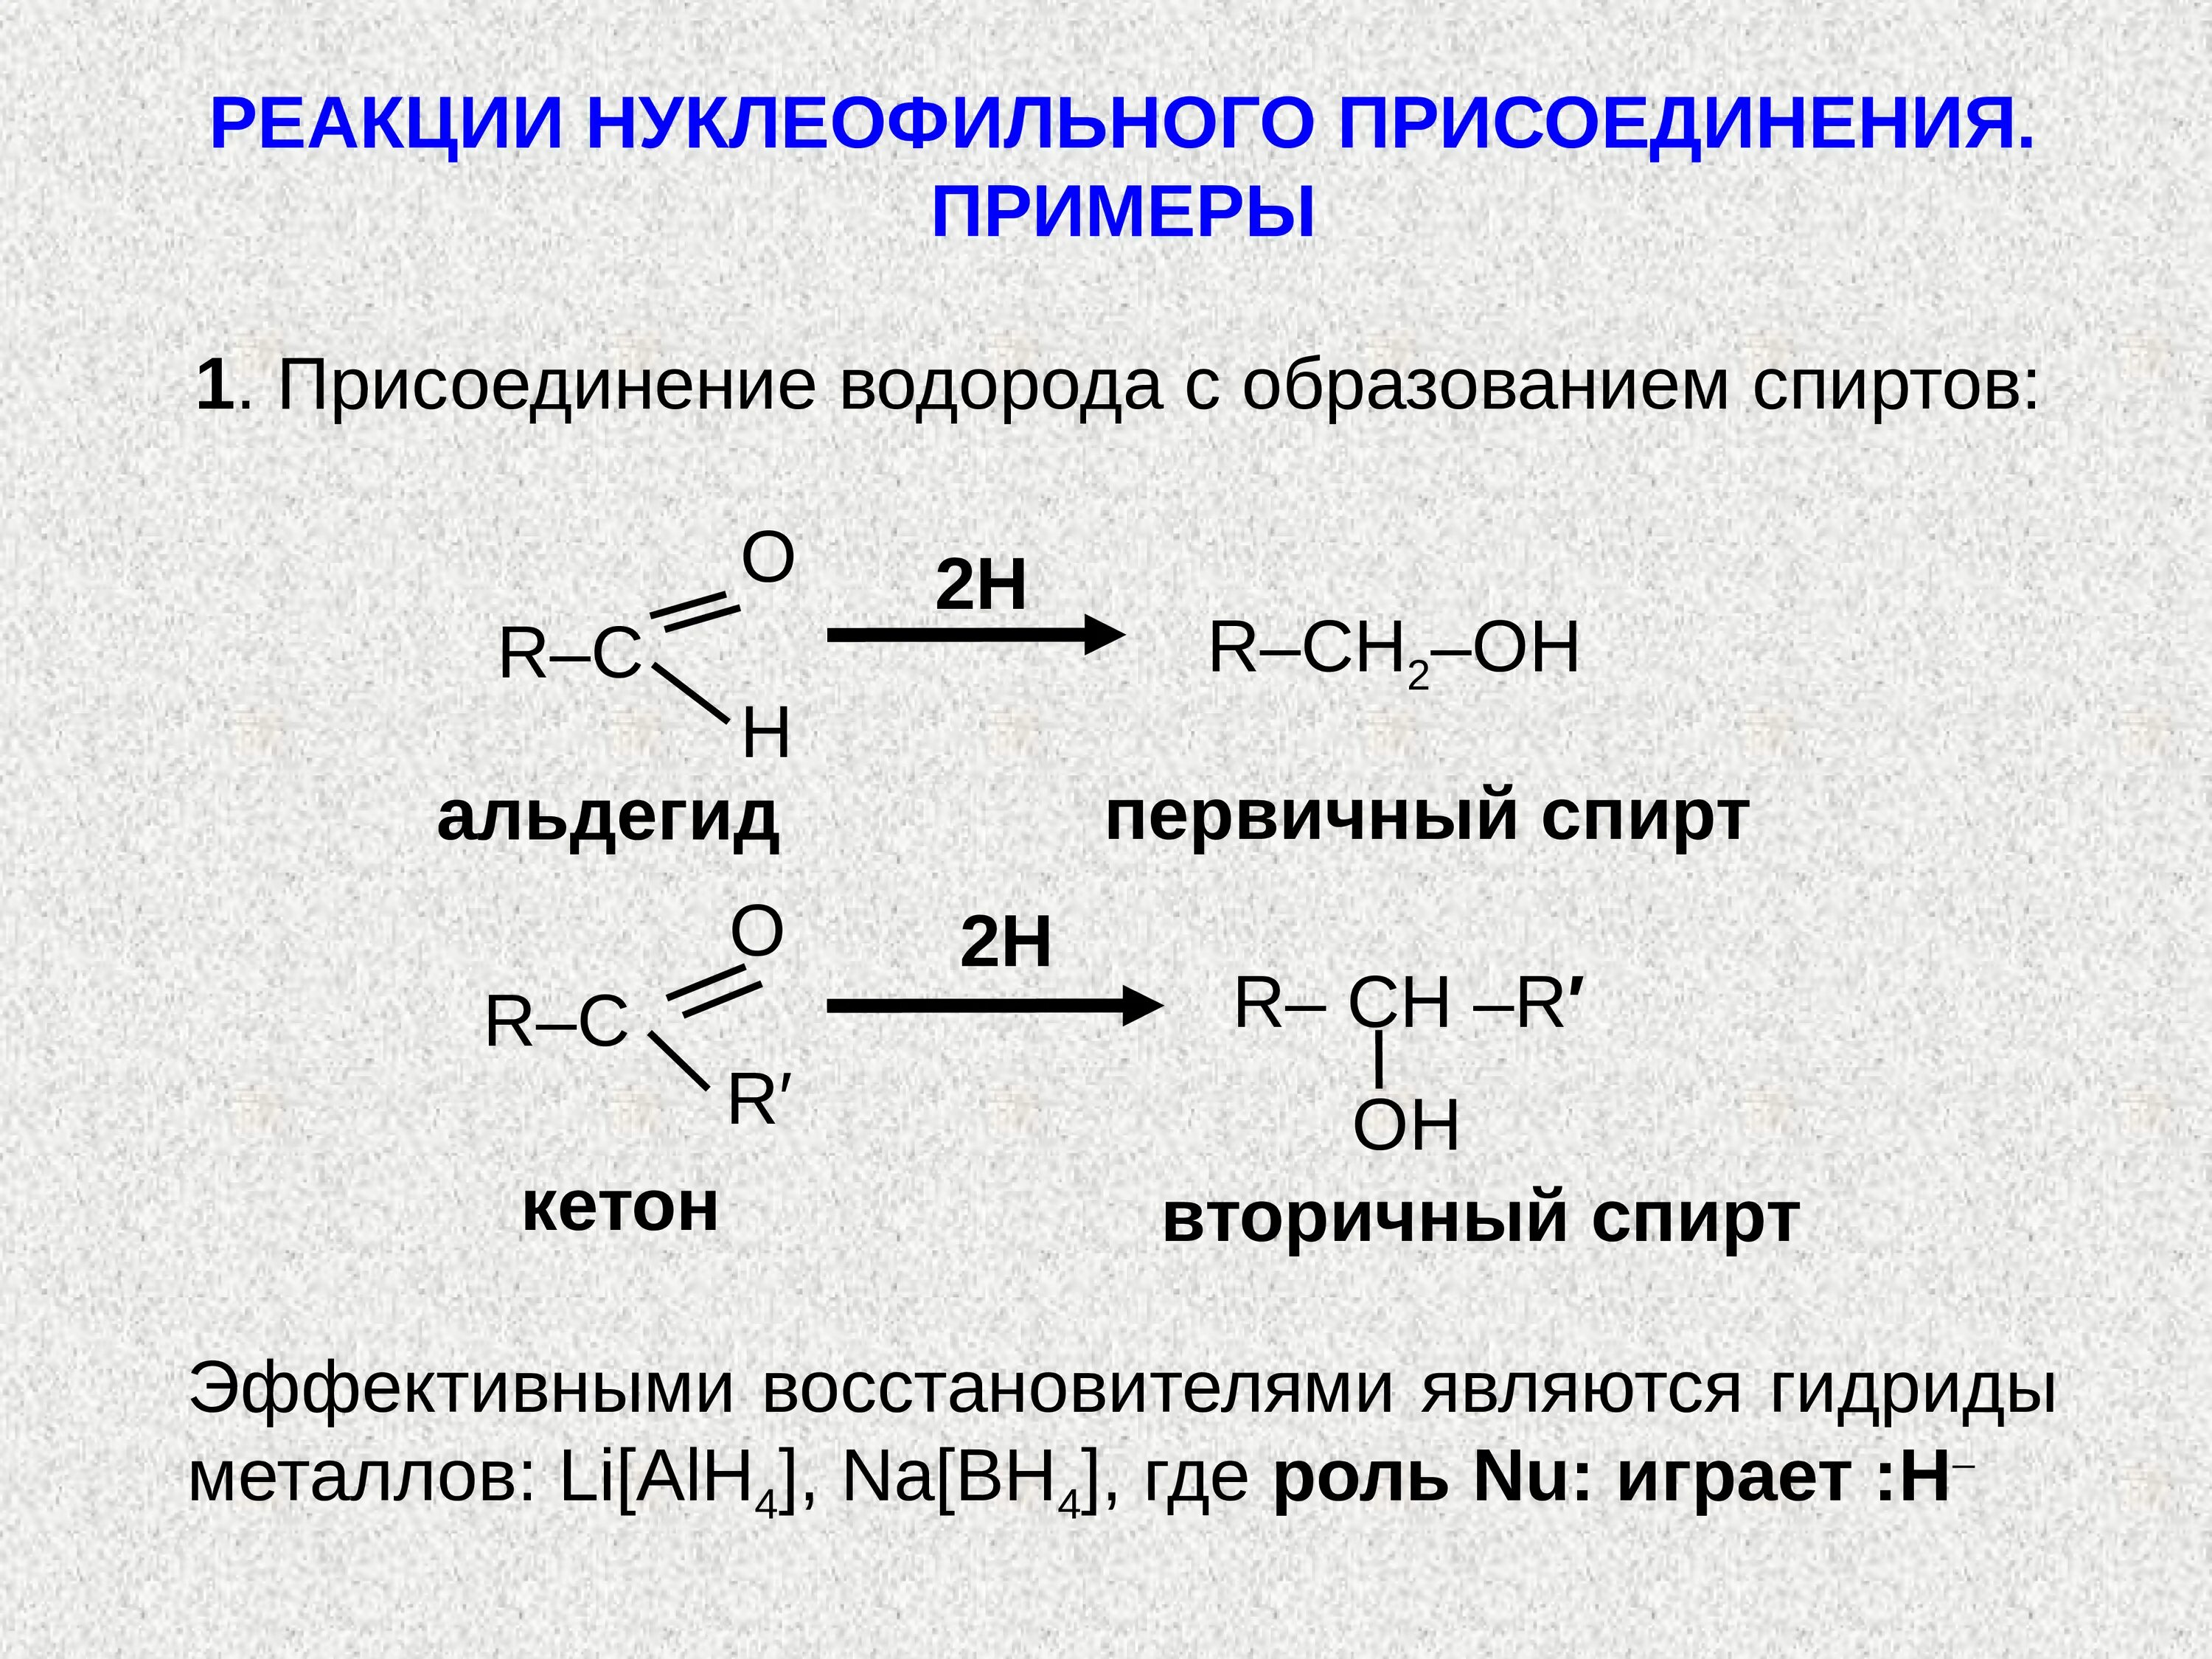 Реакция водорода характерна для